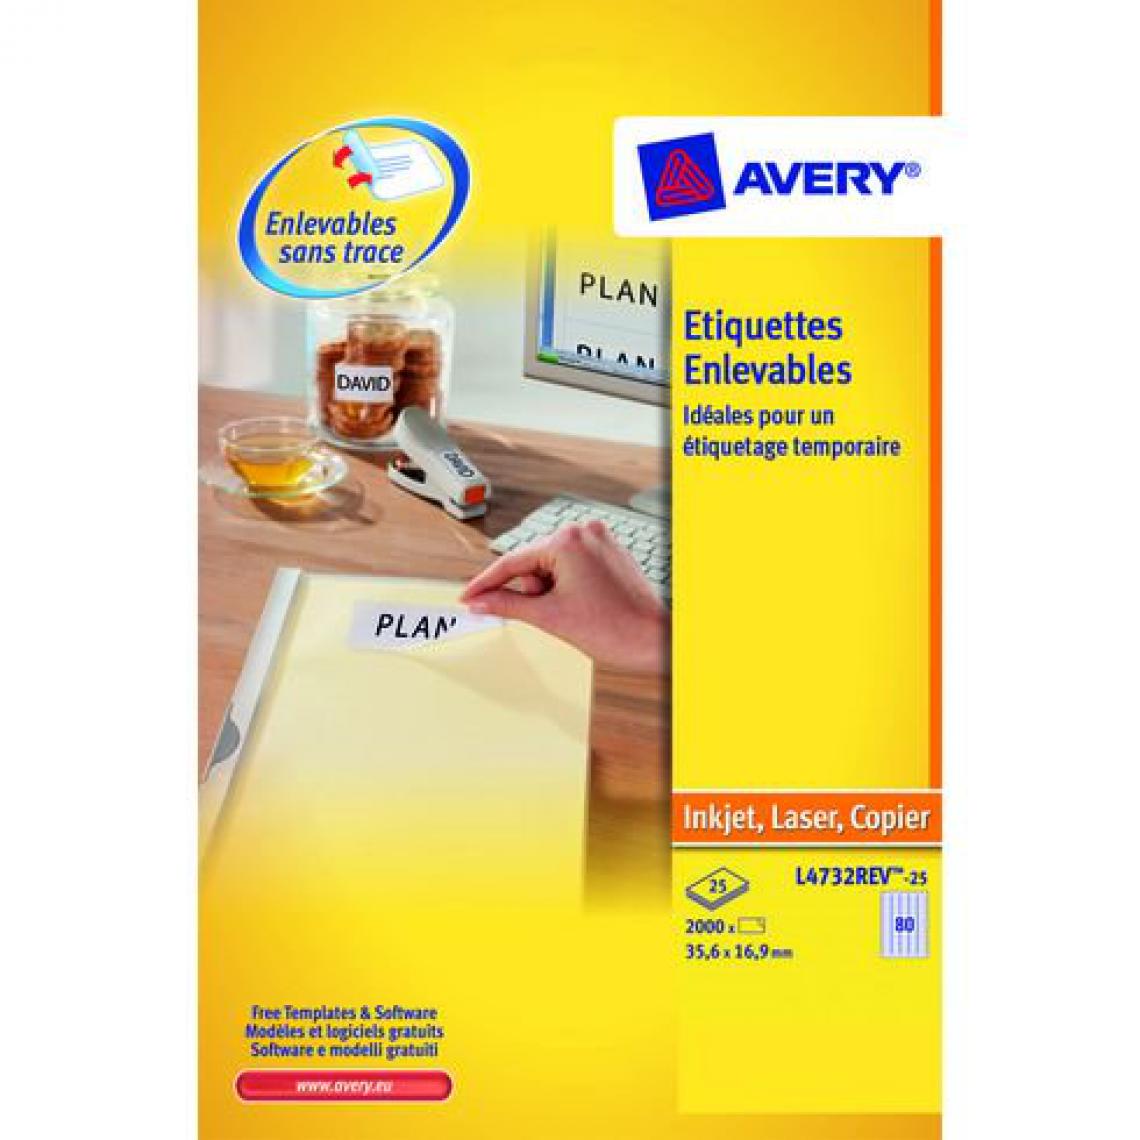 Avery - Etiquettes enlevables 35,6 x 16,9 mm Avery L4732-25 - Pochette de 2000 - Accessoires Bureau